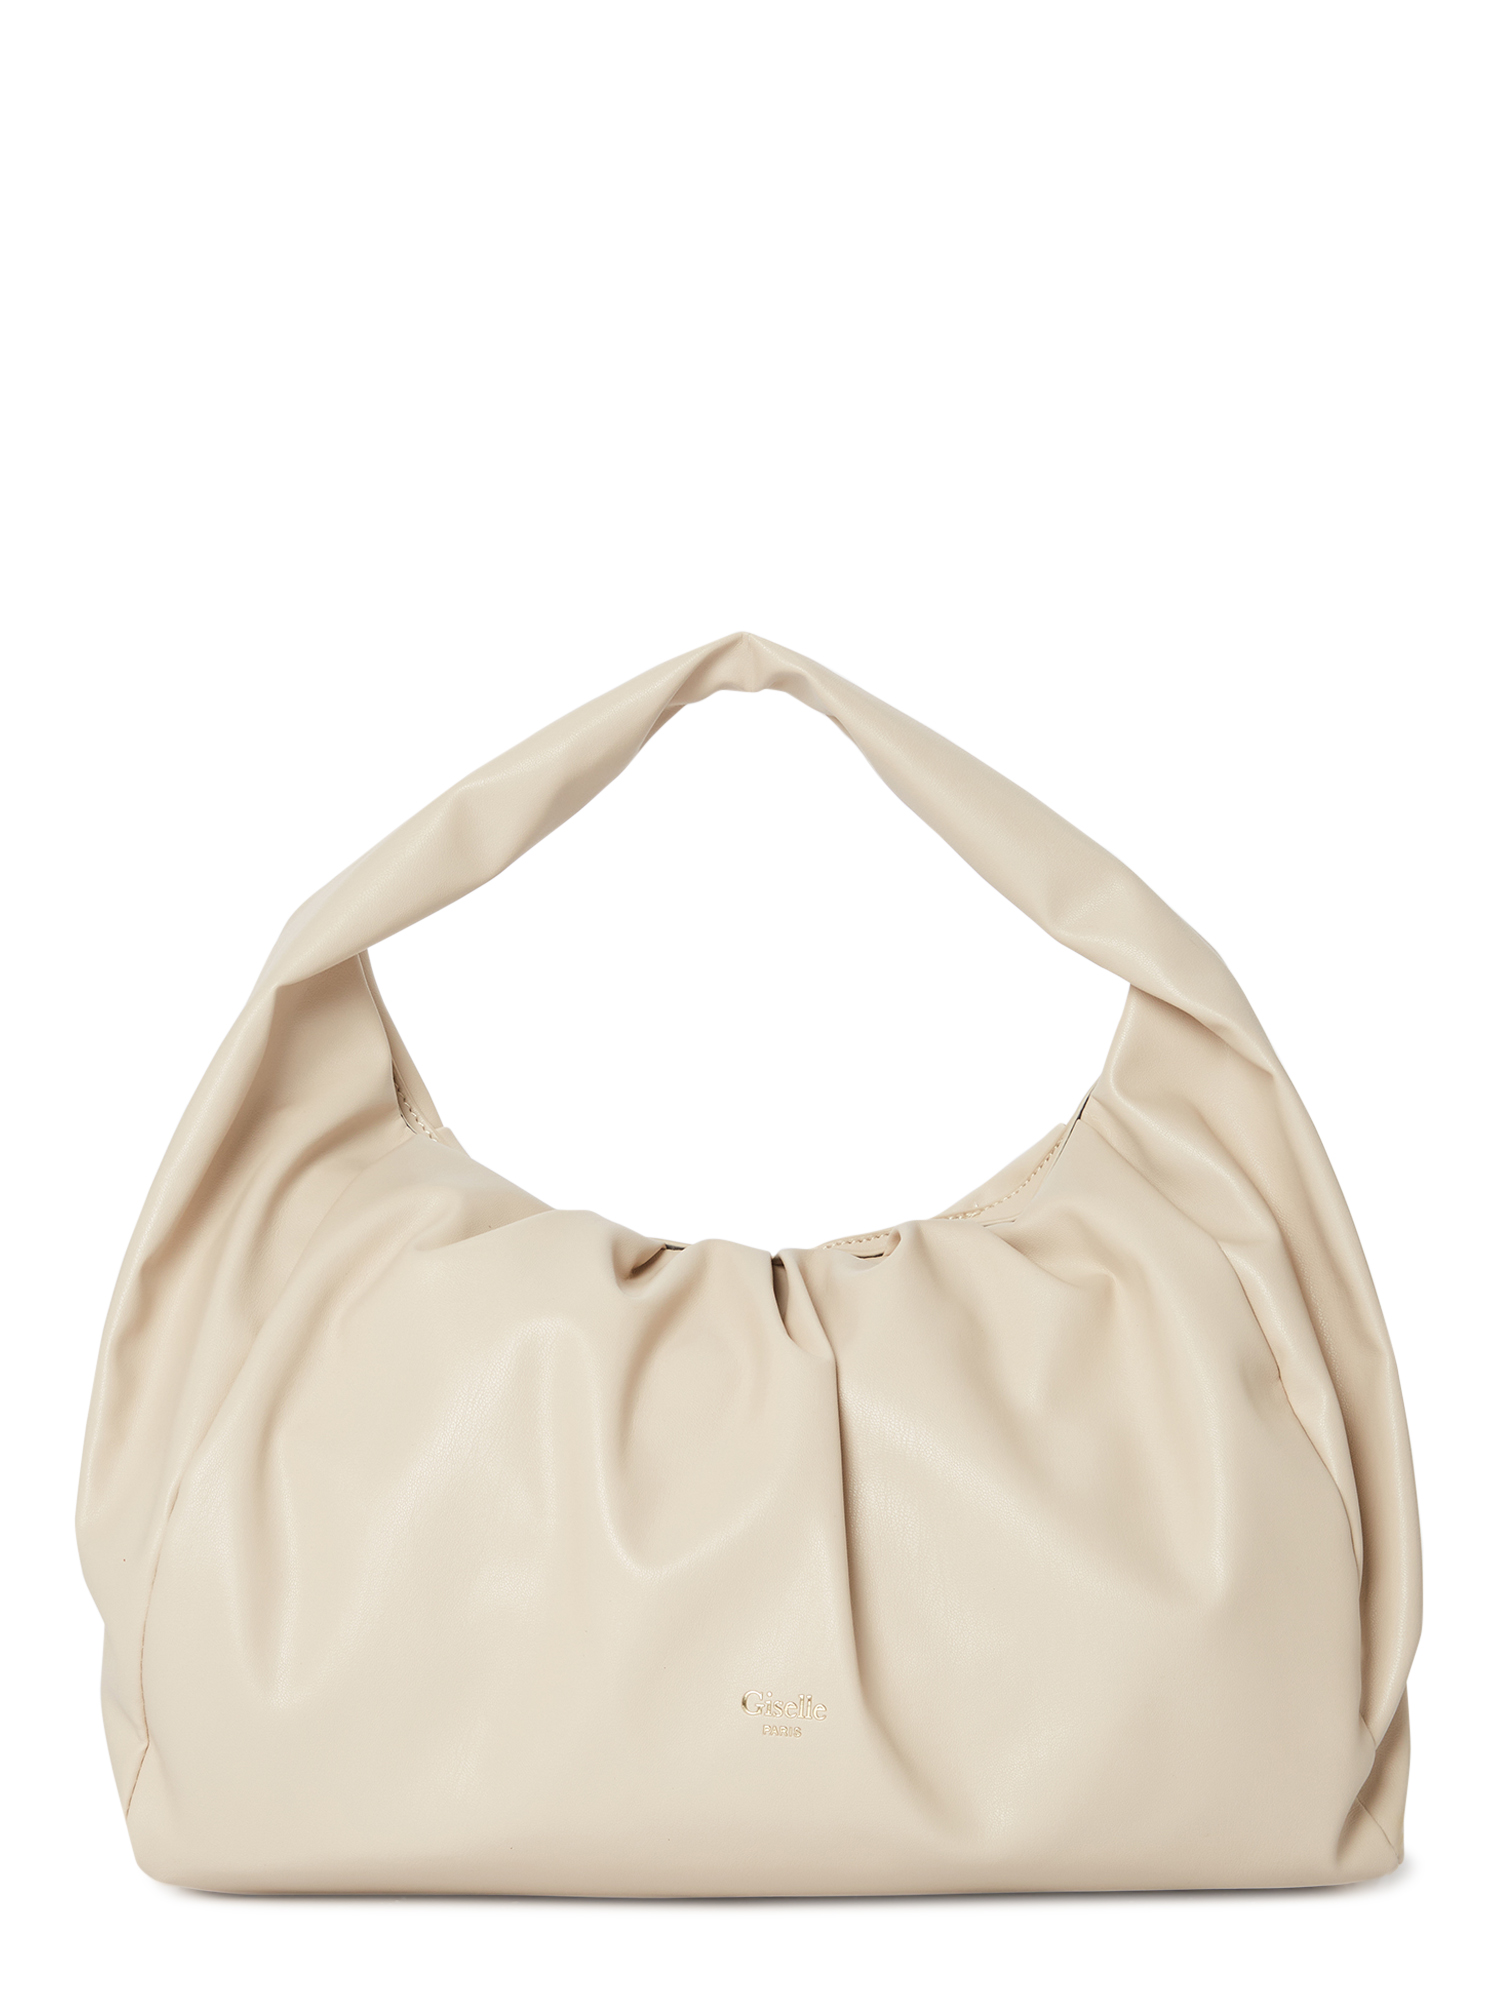 Giselle Paris Women's Adele Vegan Leather Ruched Shoulder Bag - image 1 of 5